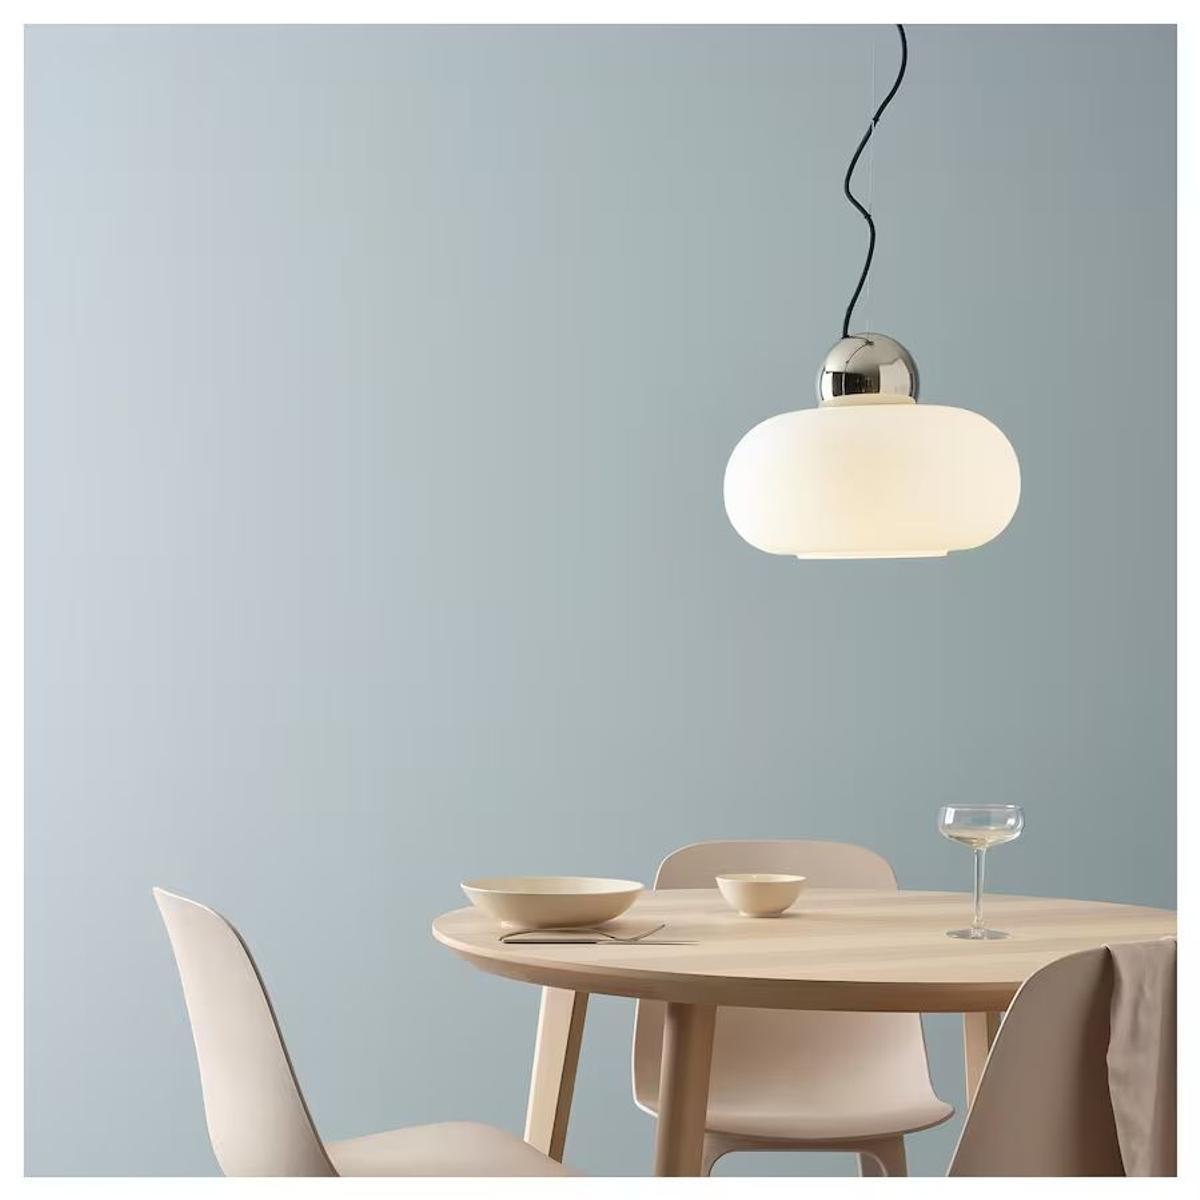 La lámpara más original de Ikea está en su outlet